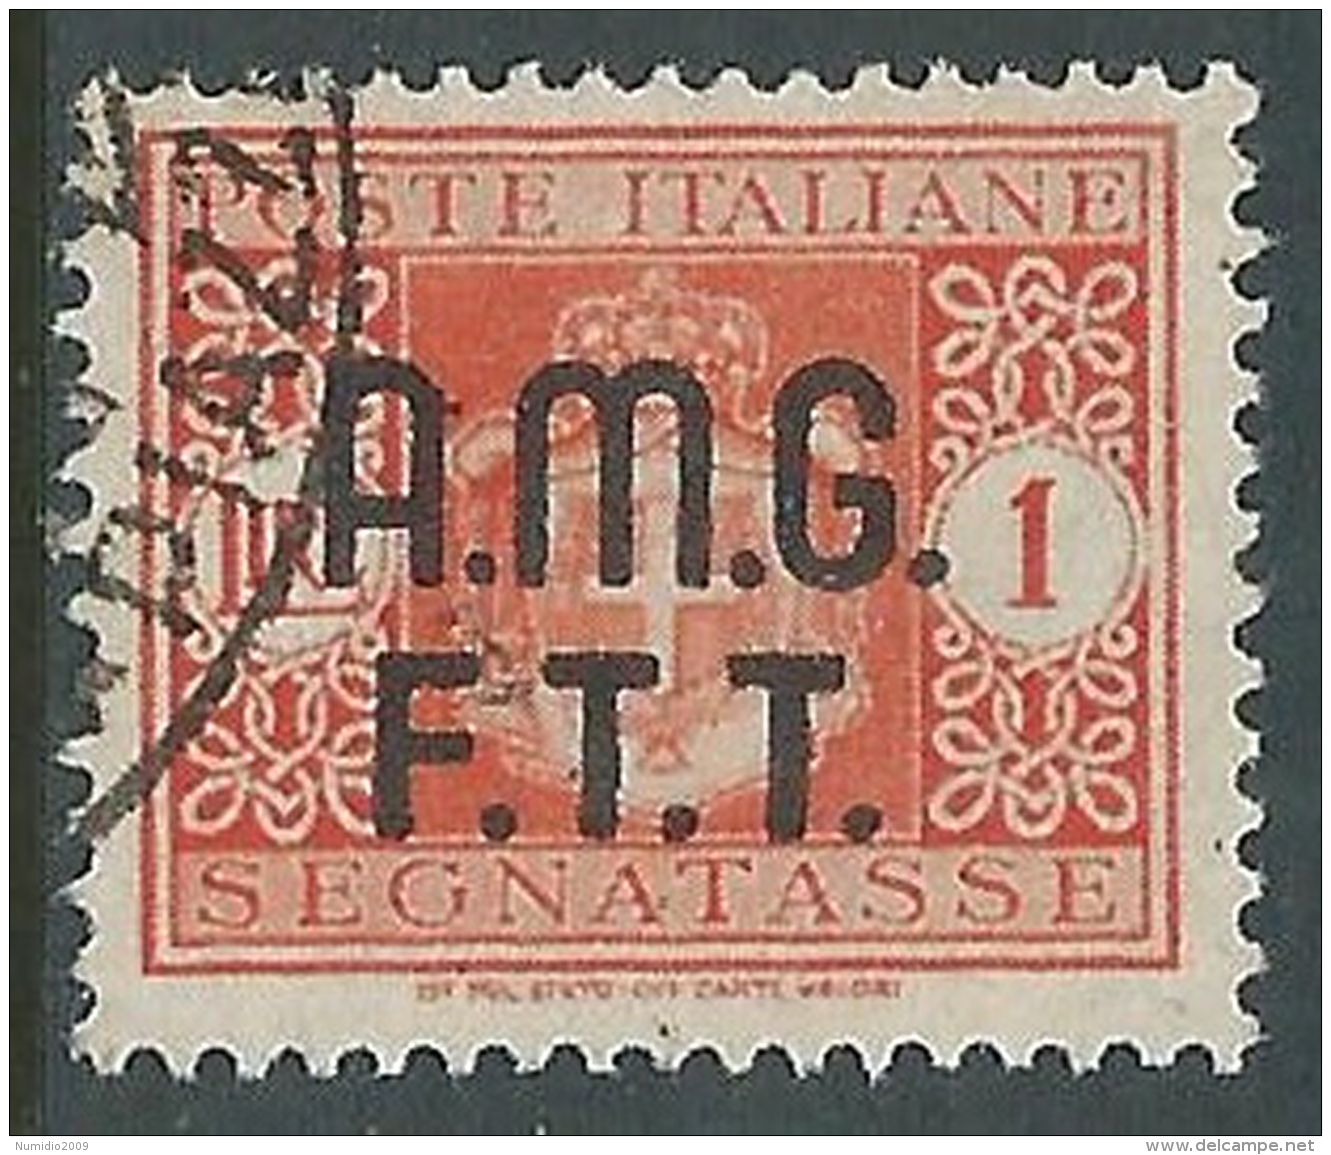 1947 TRIESTE A SEGNATASSE USATO 1 LIRA - LL4 - Postage Due